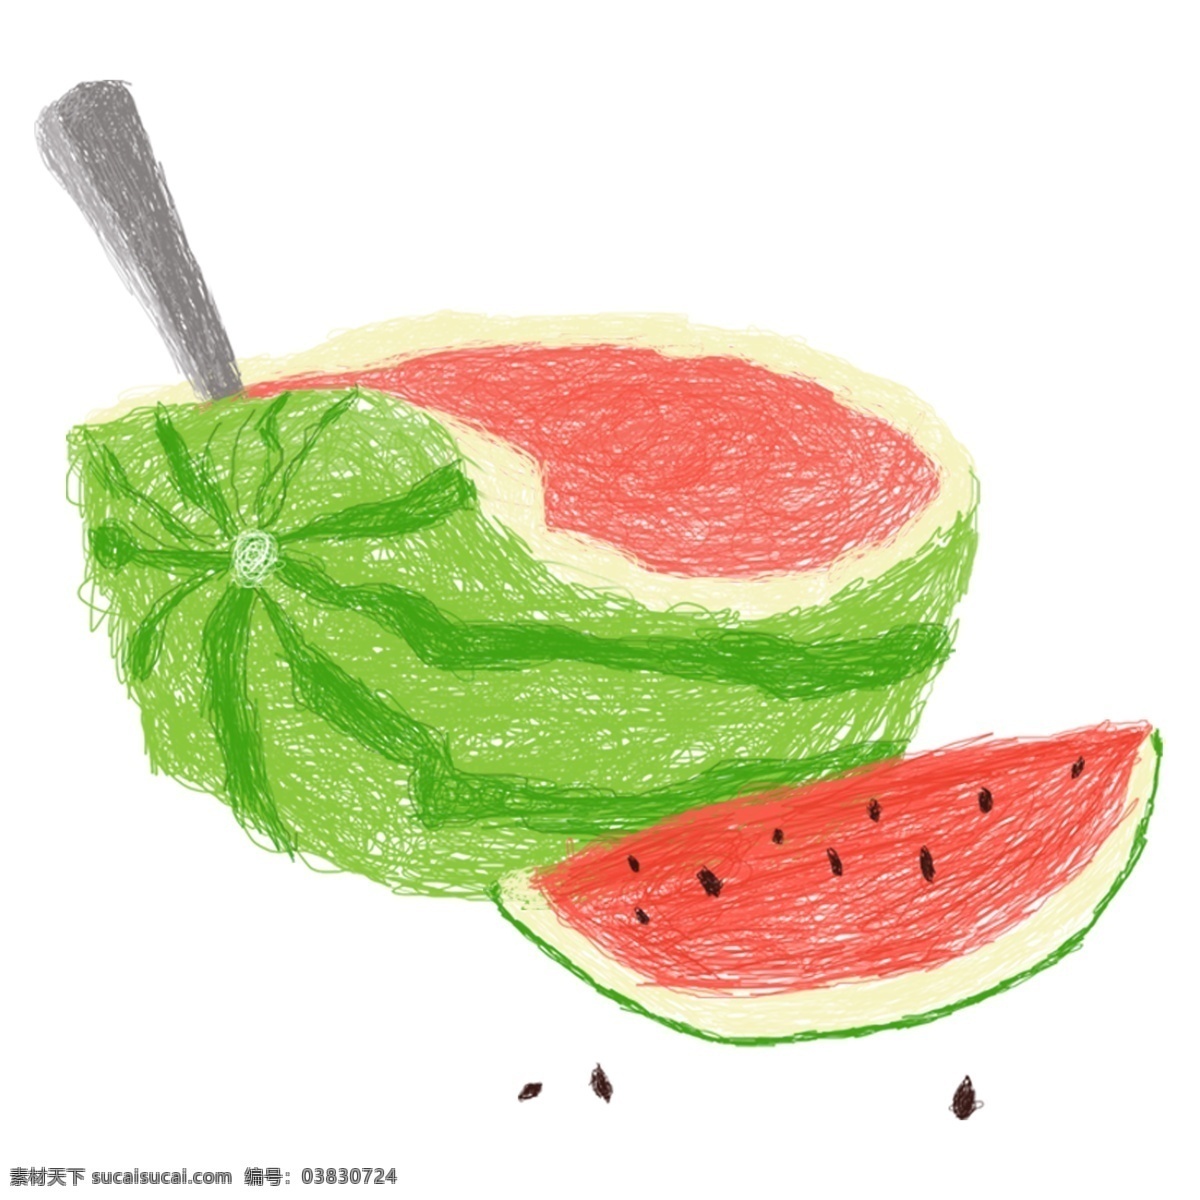 清新 夏日 西瓜 元素 食物 勺子 水果 夏季 夏天 装饰元素